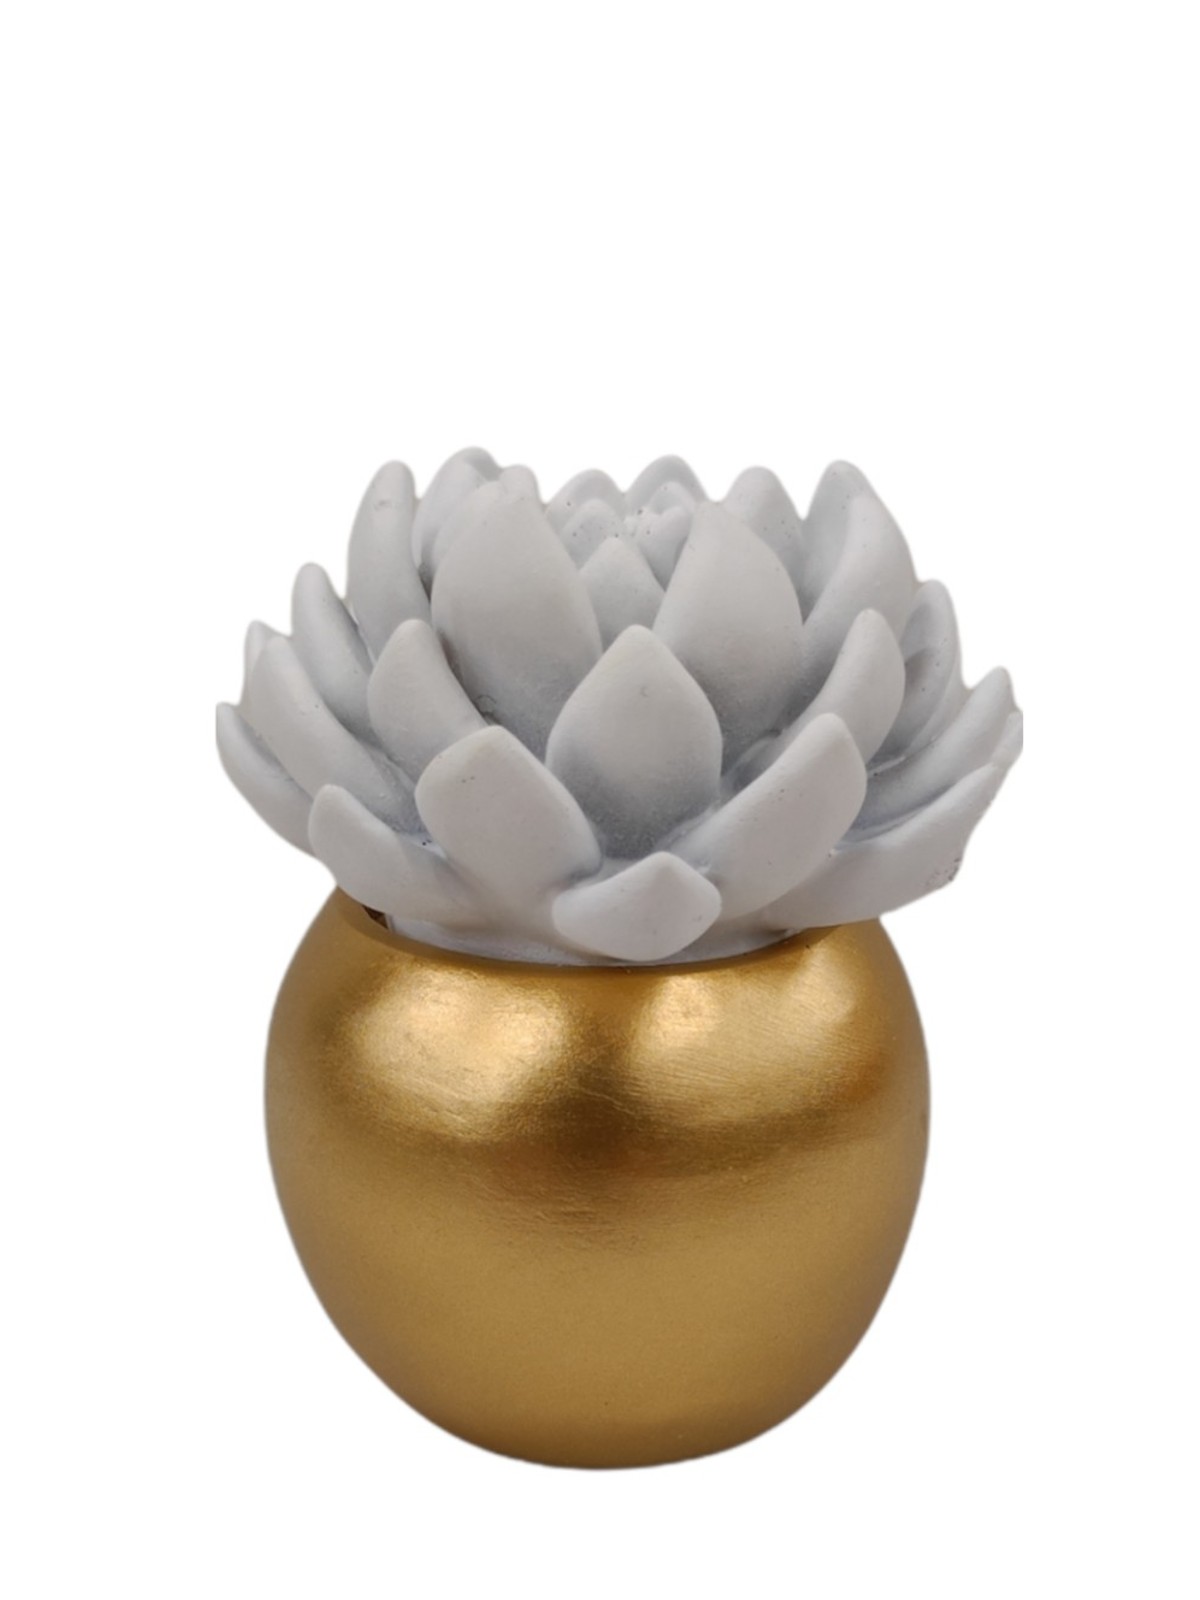 Flowerpot with succulent ceramic